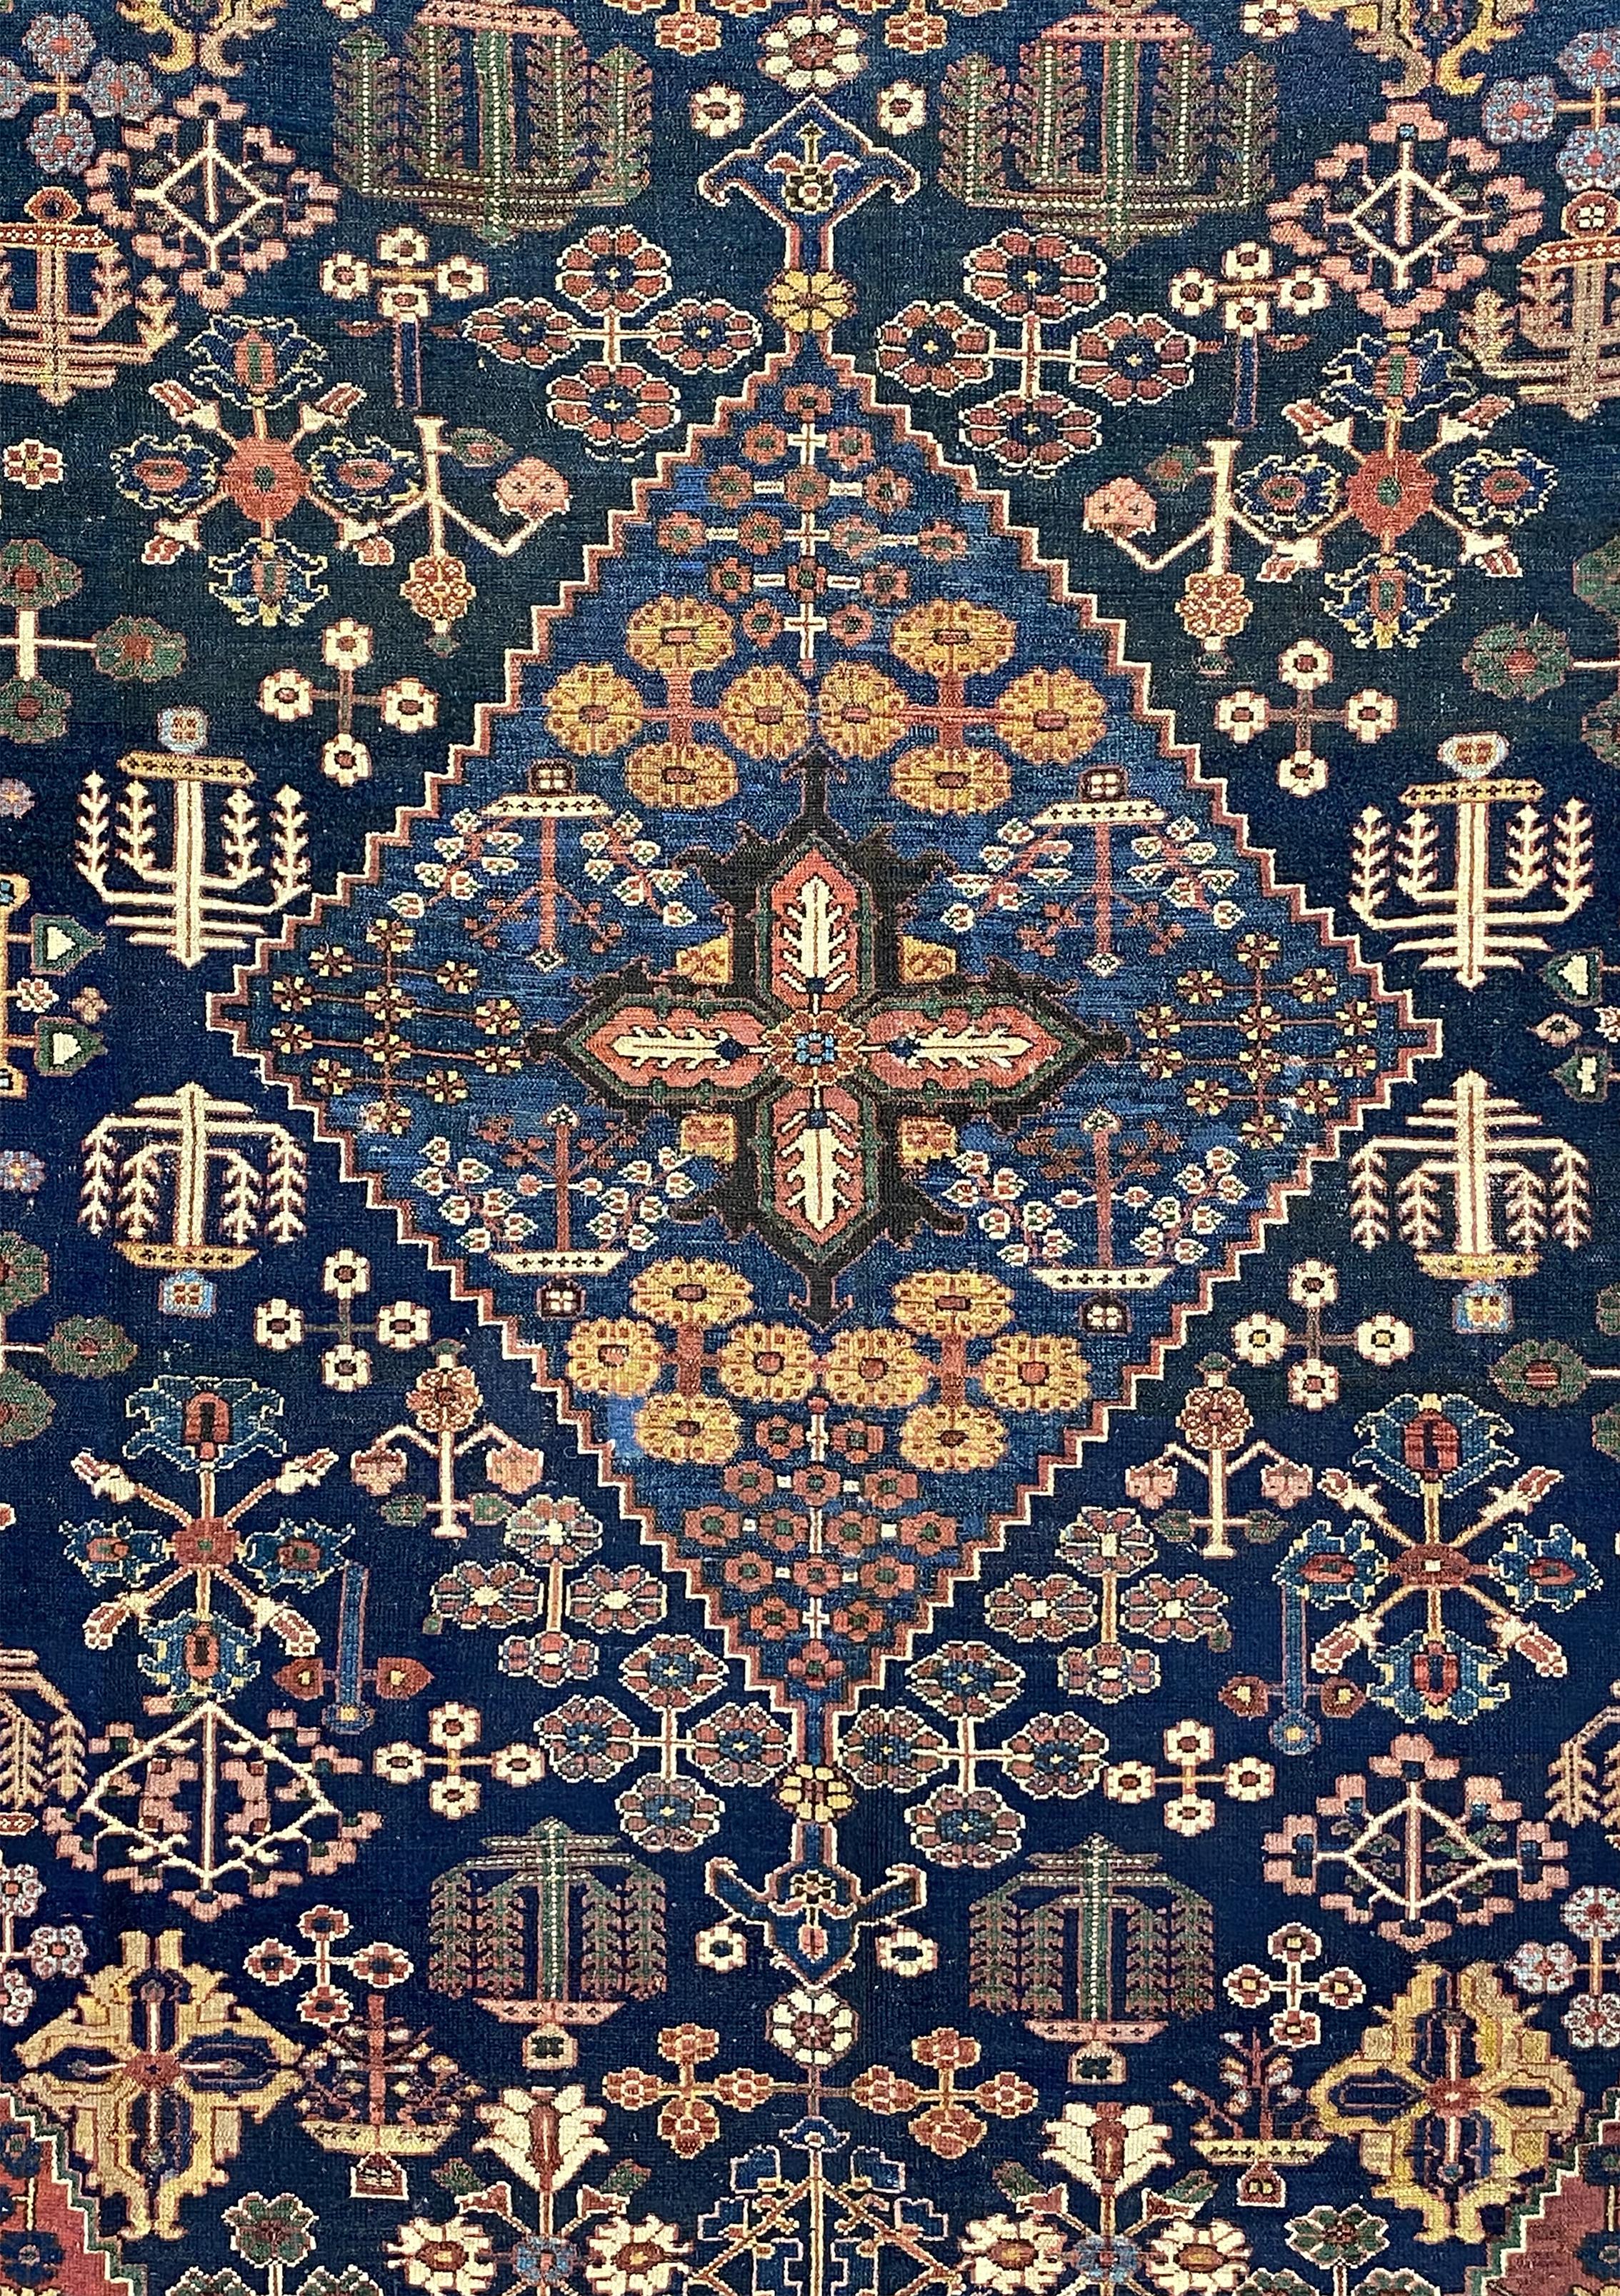 Les tapis Bakhtiari sont parmi les plus durables et présentent un large éventail de motifs parmi les tapis tribaux persans. La région de Bakhtiar compte de nombreuses tribus, chaque tribu ayant sa propre technique de tissage. Leurs tapis anciens